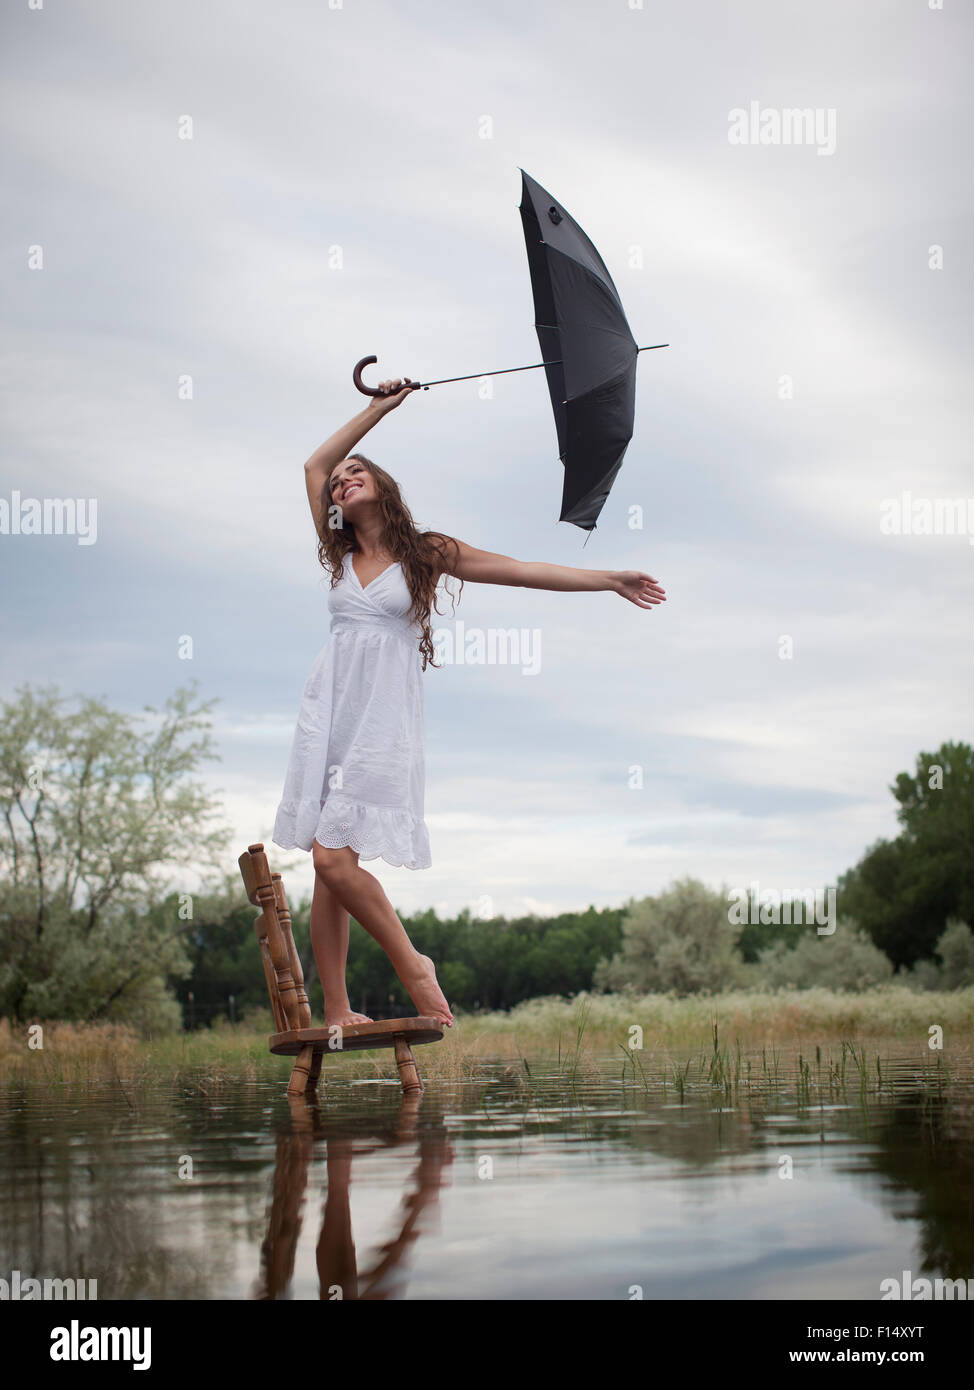 Stati Uniti d'America, Utah, Provo, donna in piedi su una sedia nel lago e ombrello di contenimento Foto Stock